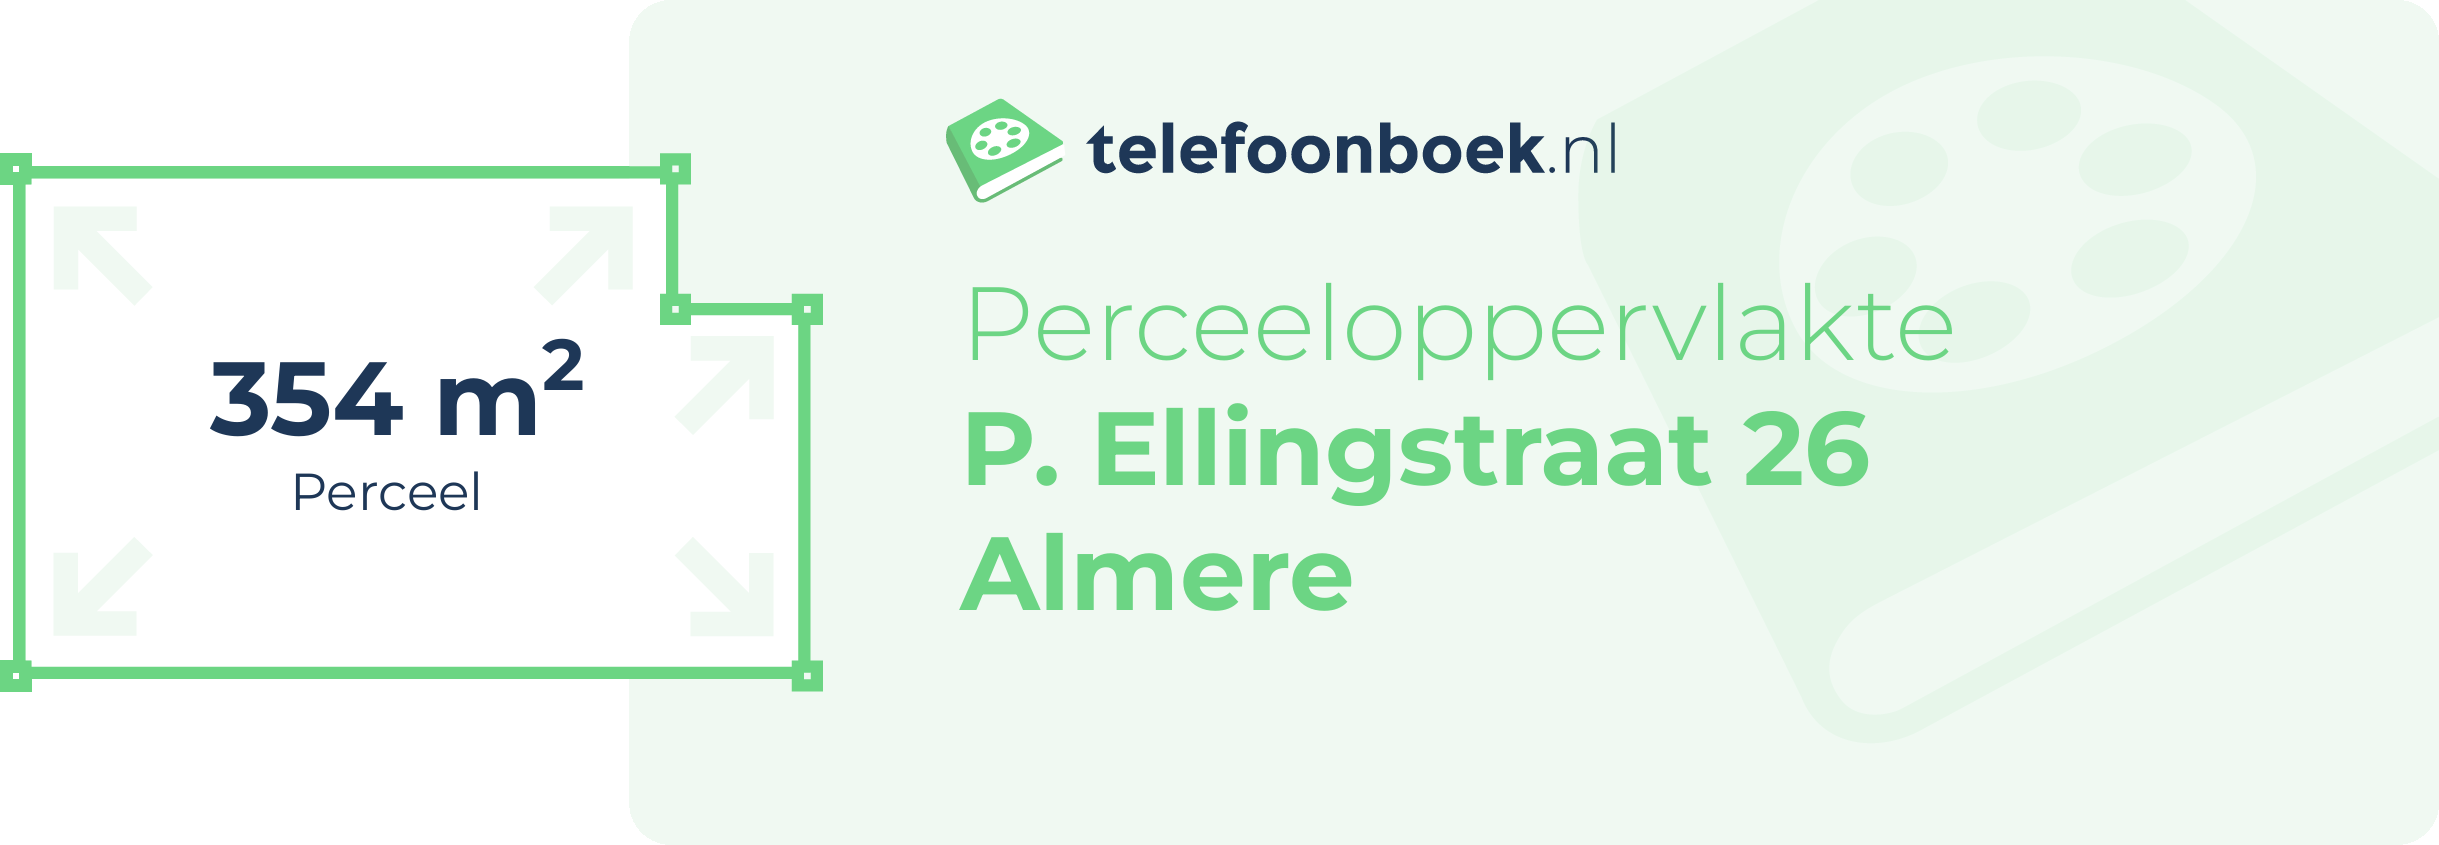 Perceeloppervlakte P. Ellingstraat 26 Almere